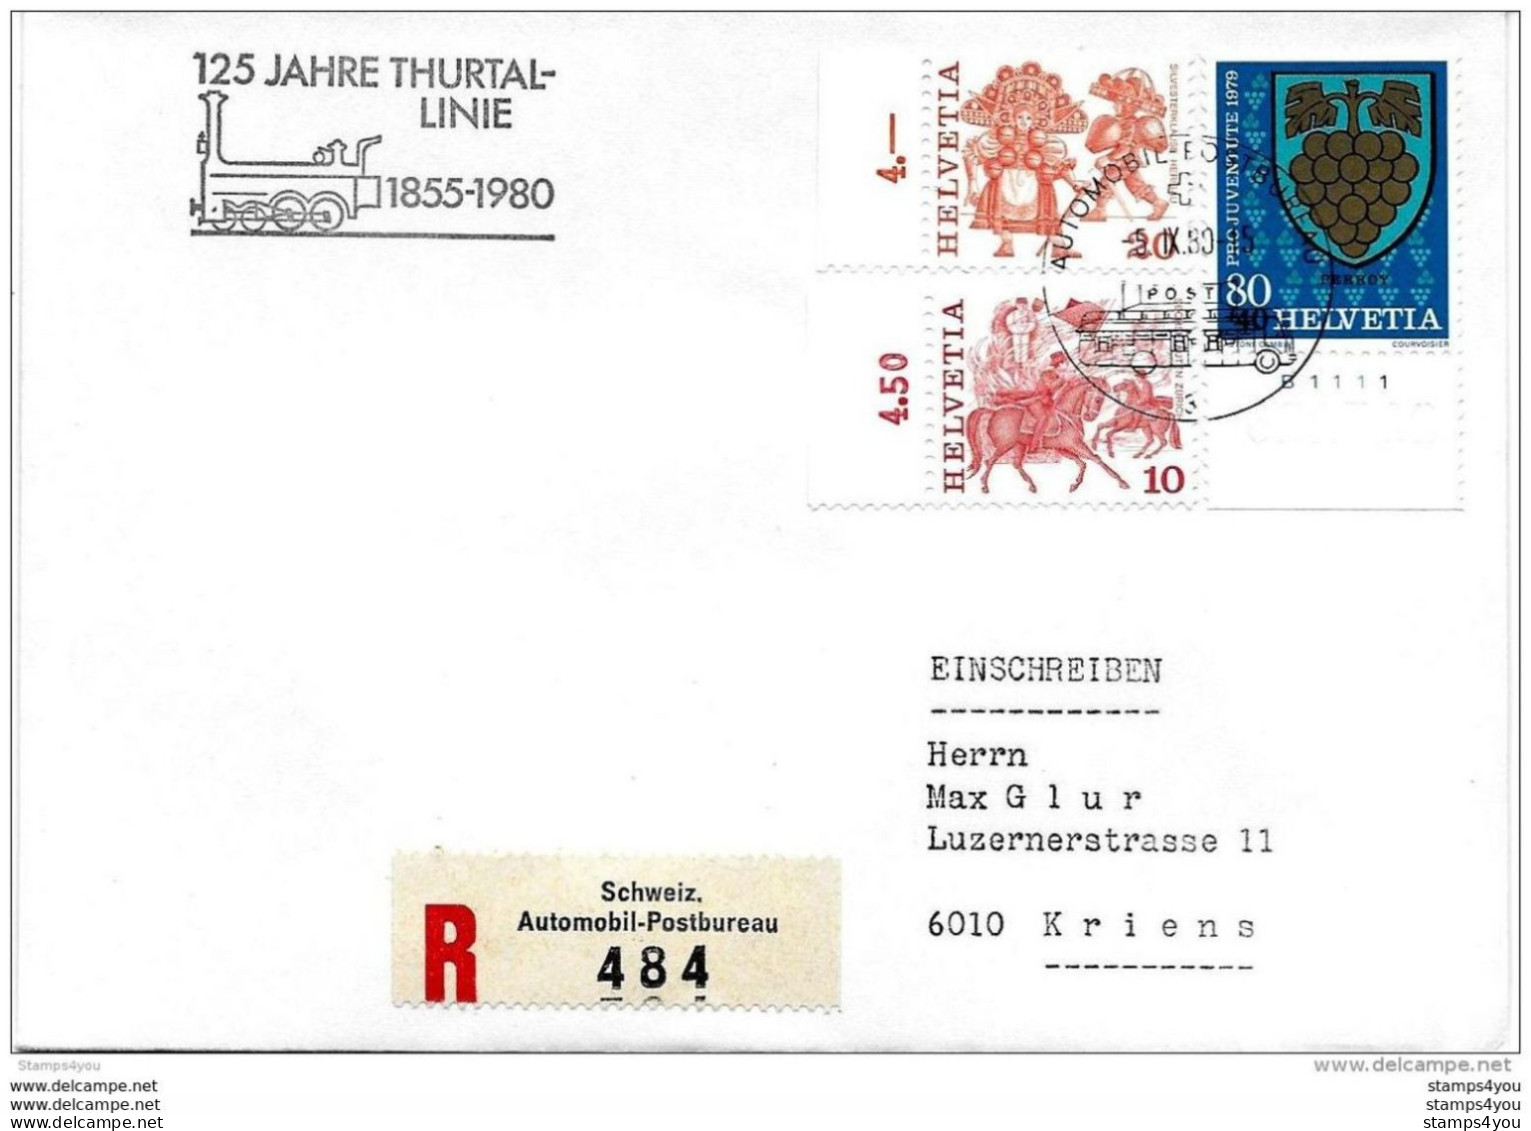 228 - 77 -  Enveloppe Suisse Recommandée Avec Oblit Spéciale "125 Jahre Thurtal-linie 1980" - Treinen